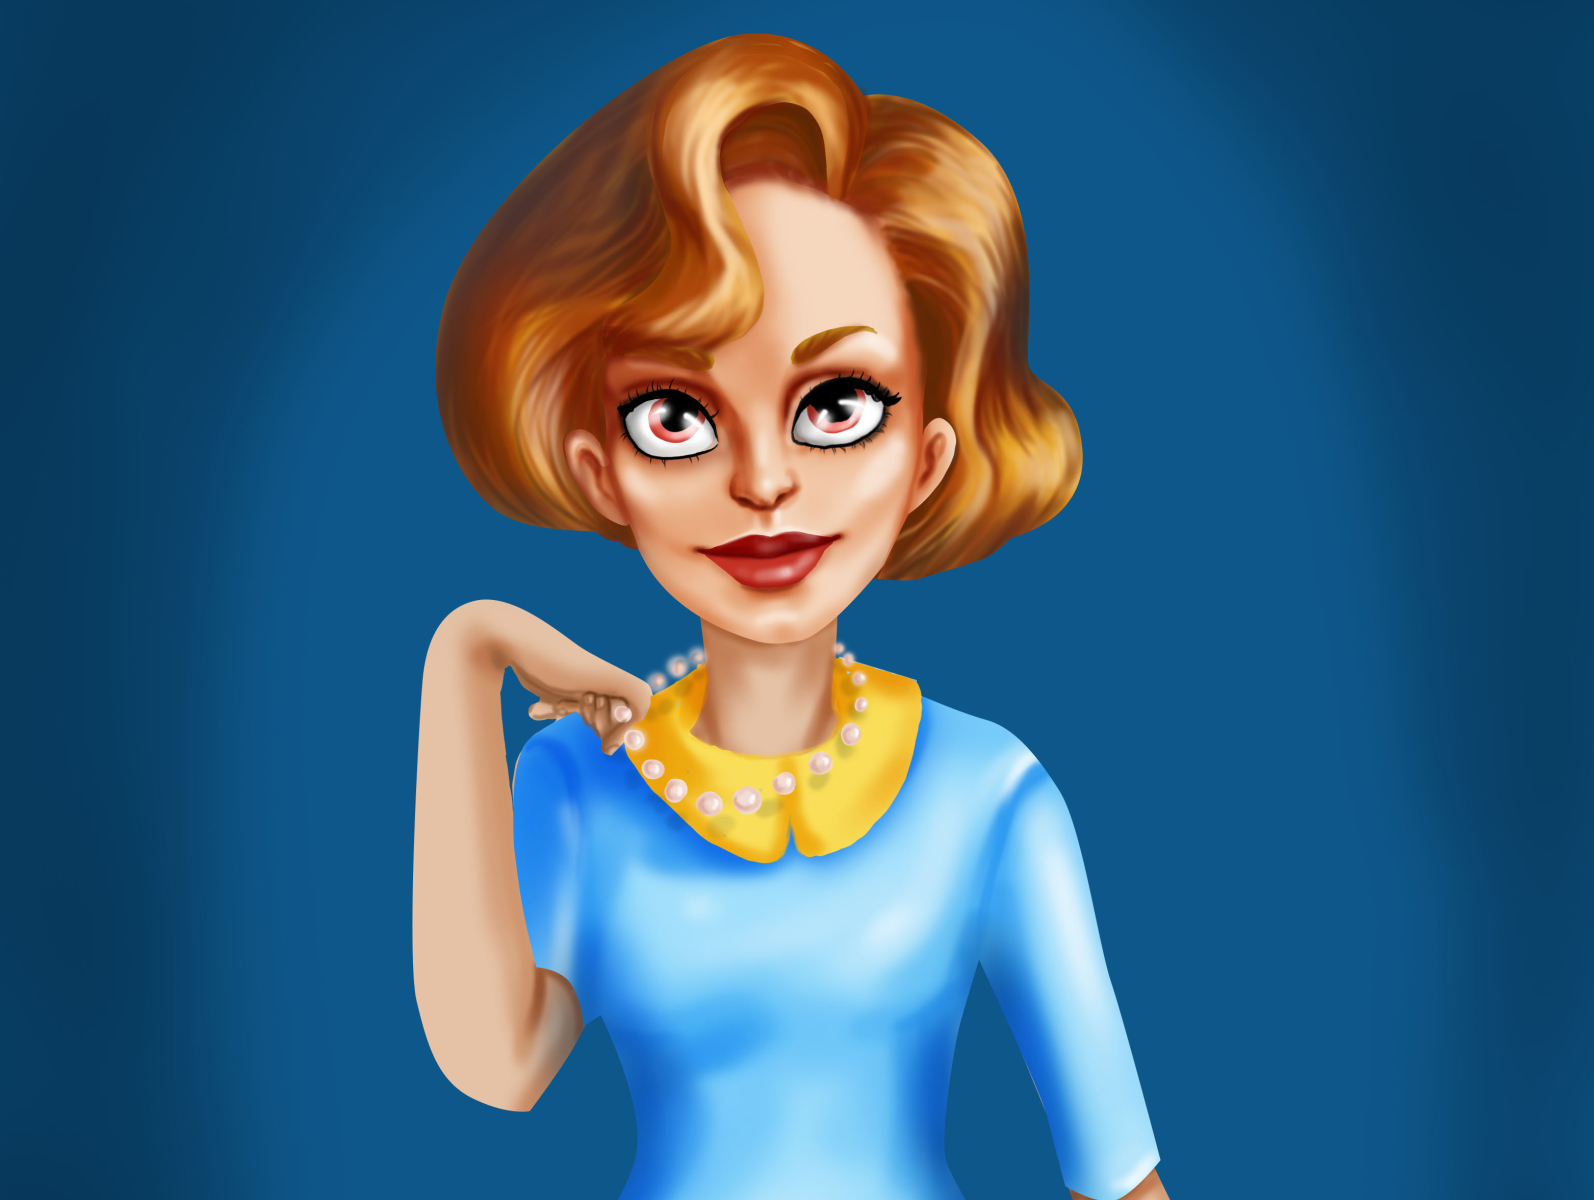 стилизованный персонаж в казуальном стиле 2d character character design geimdev girl character illustration